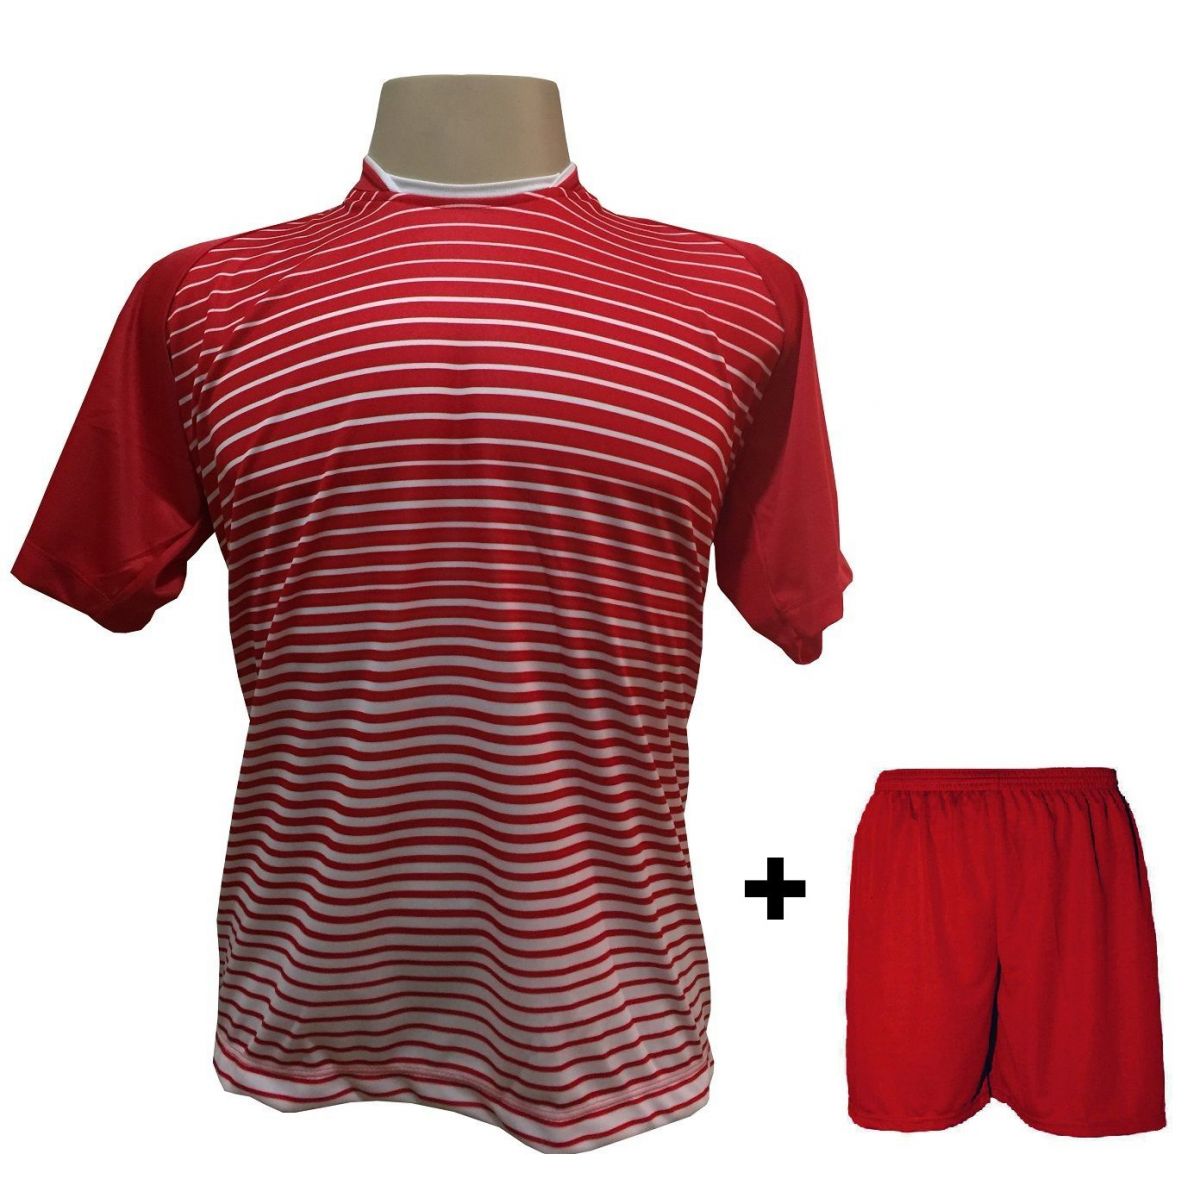 Uniforme Esportivo com 18 camisas modelo City Vermelho/Branco + 18 calções modelo Madrid Vermelho + Brindes